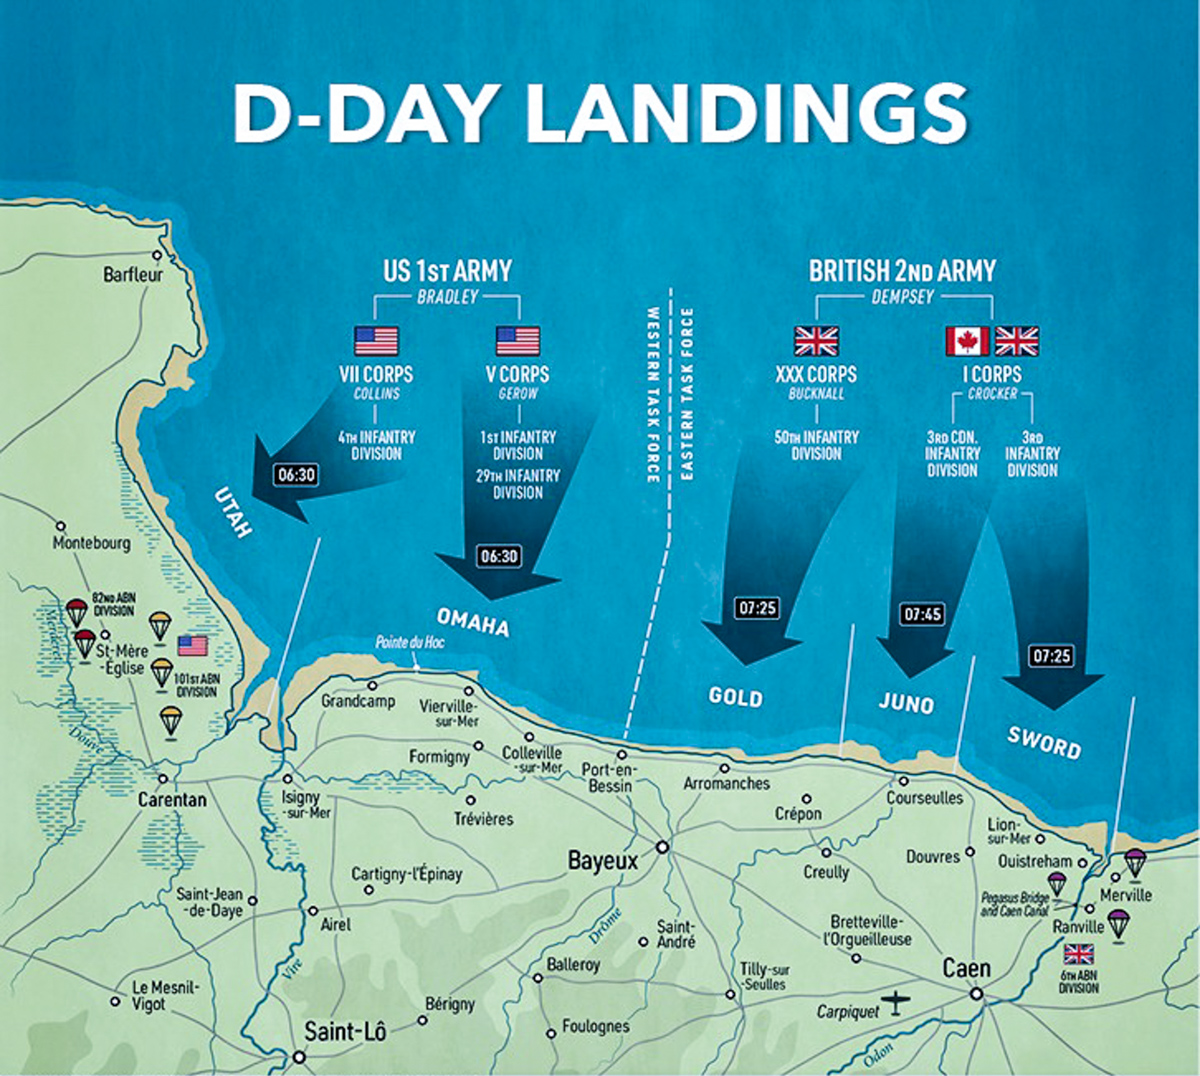 D-Day-landing-beaches-map-1465599-3-2.jpg